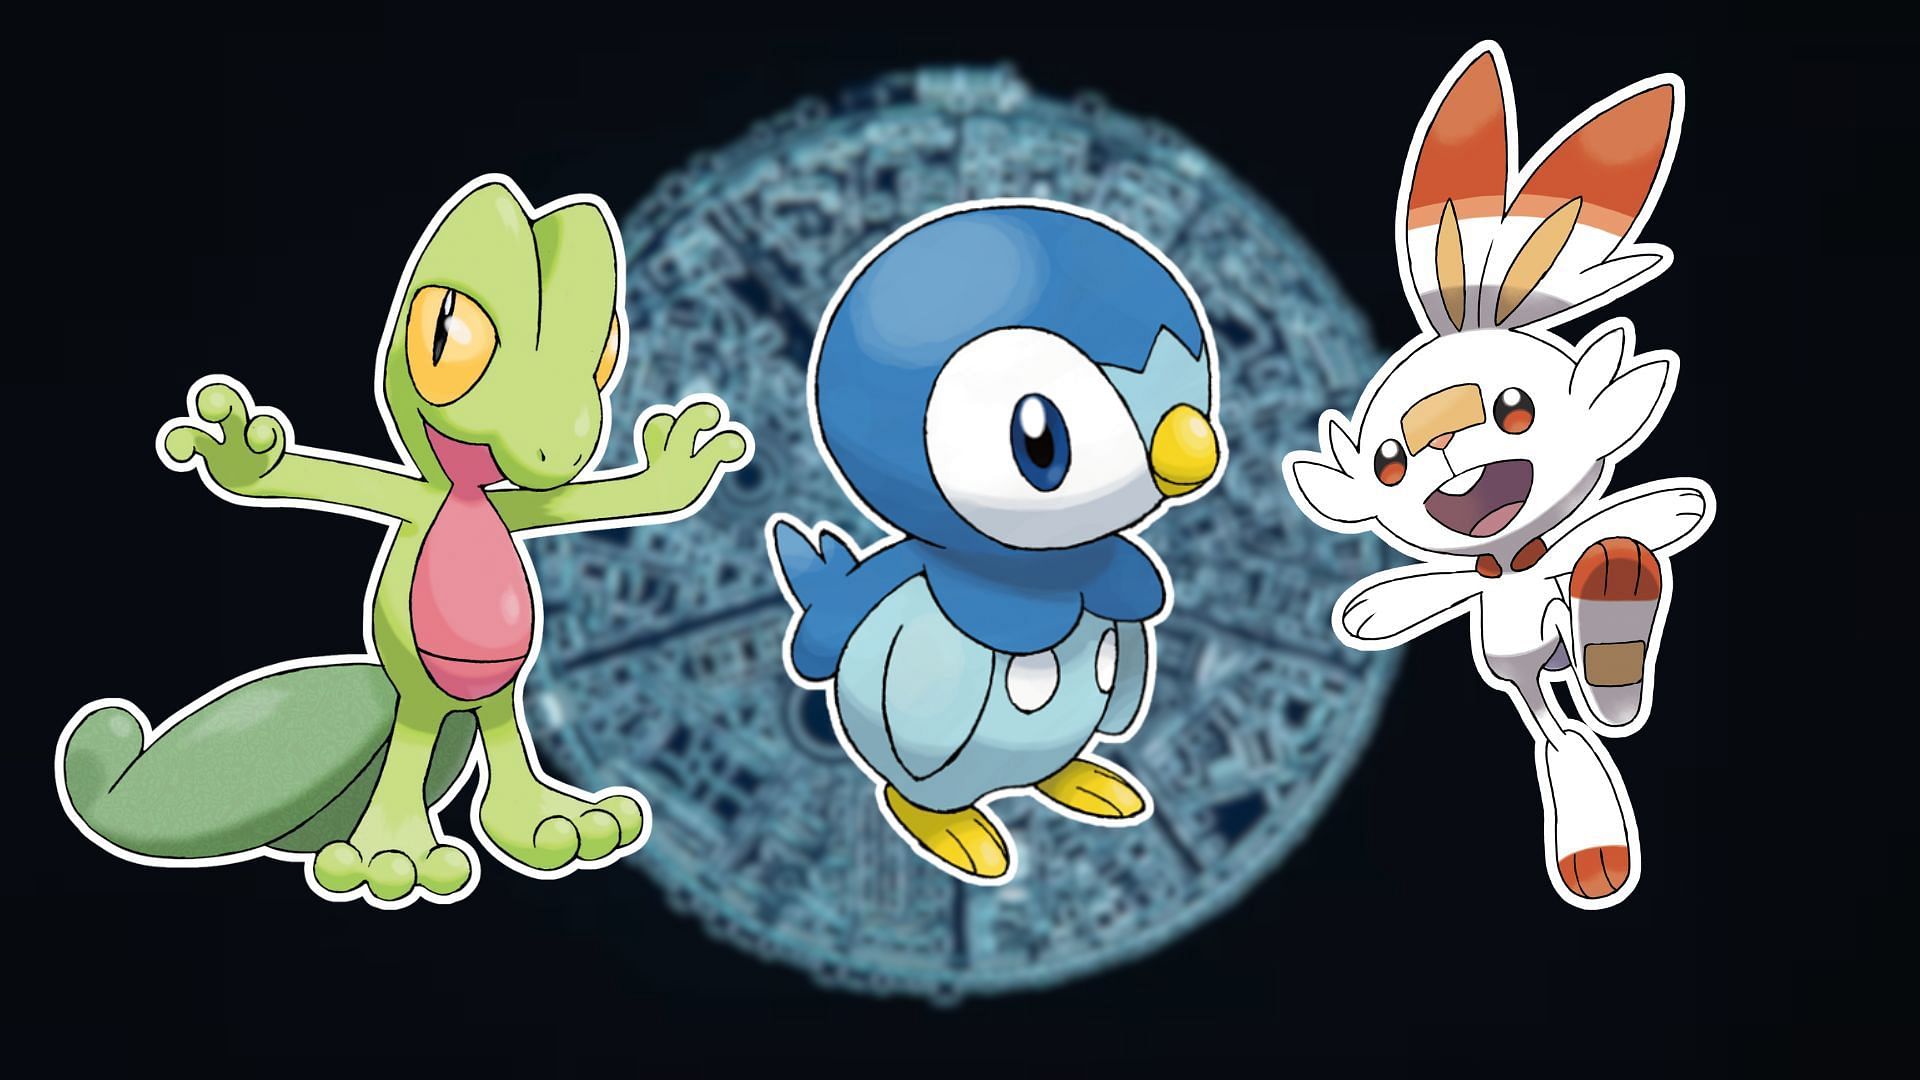 Treecko, Piplup and Scorbunny (Image via The Pokemon Company)